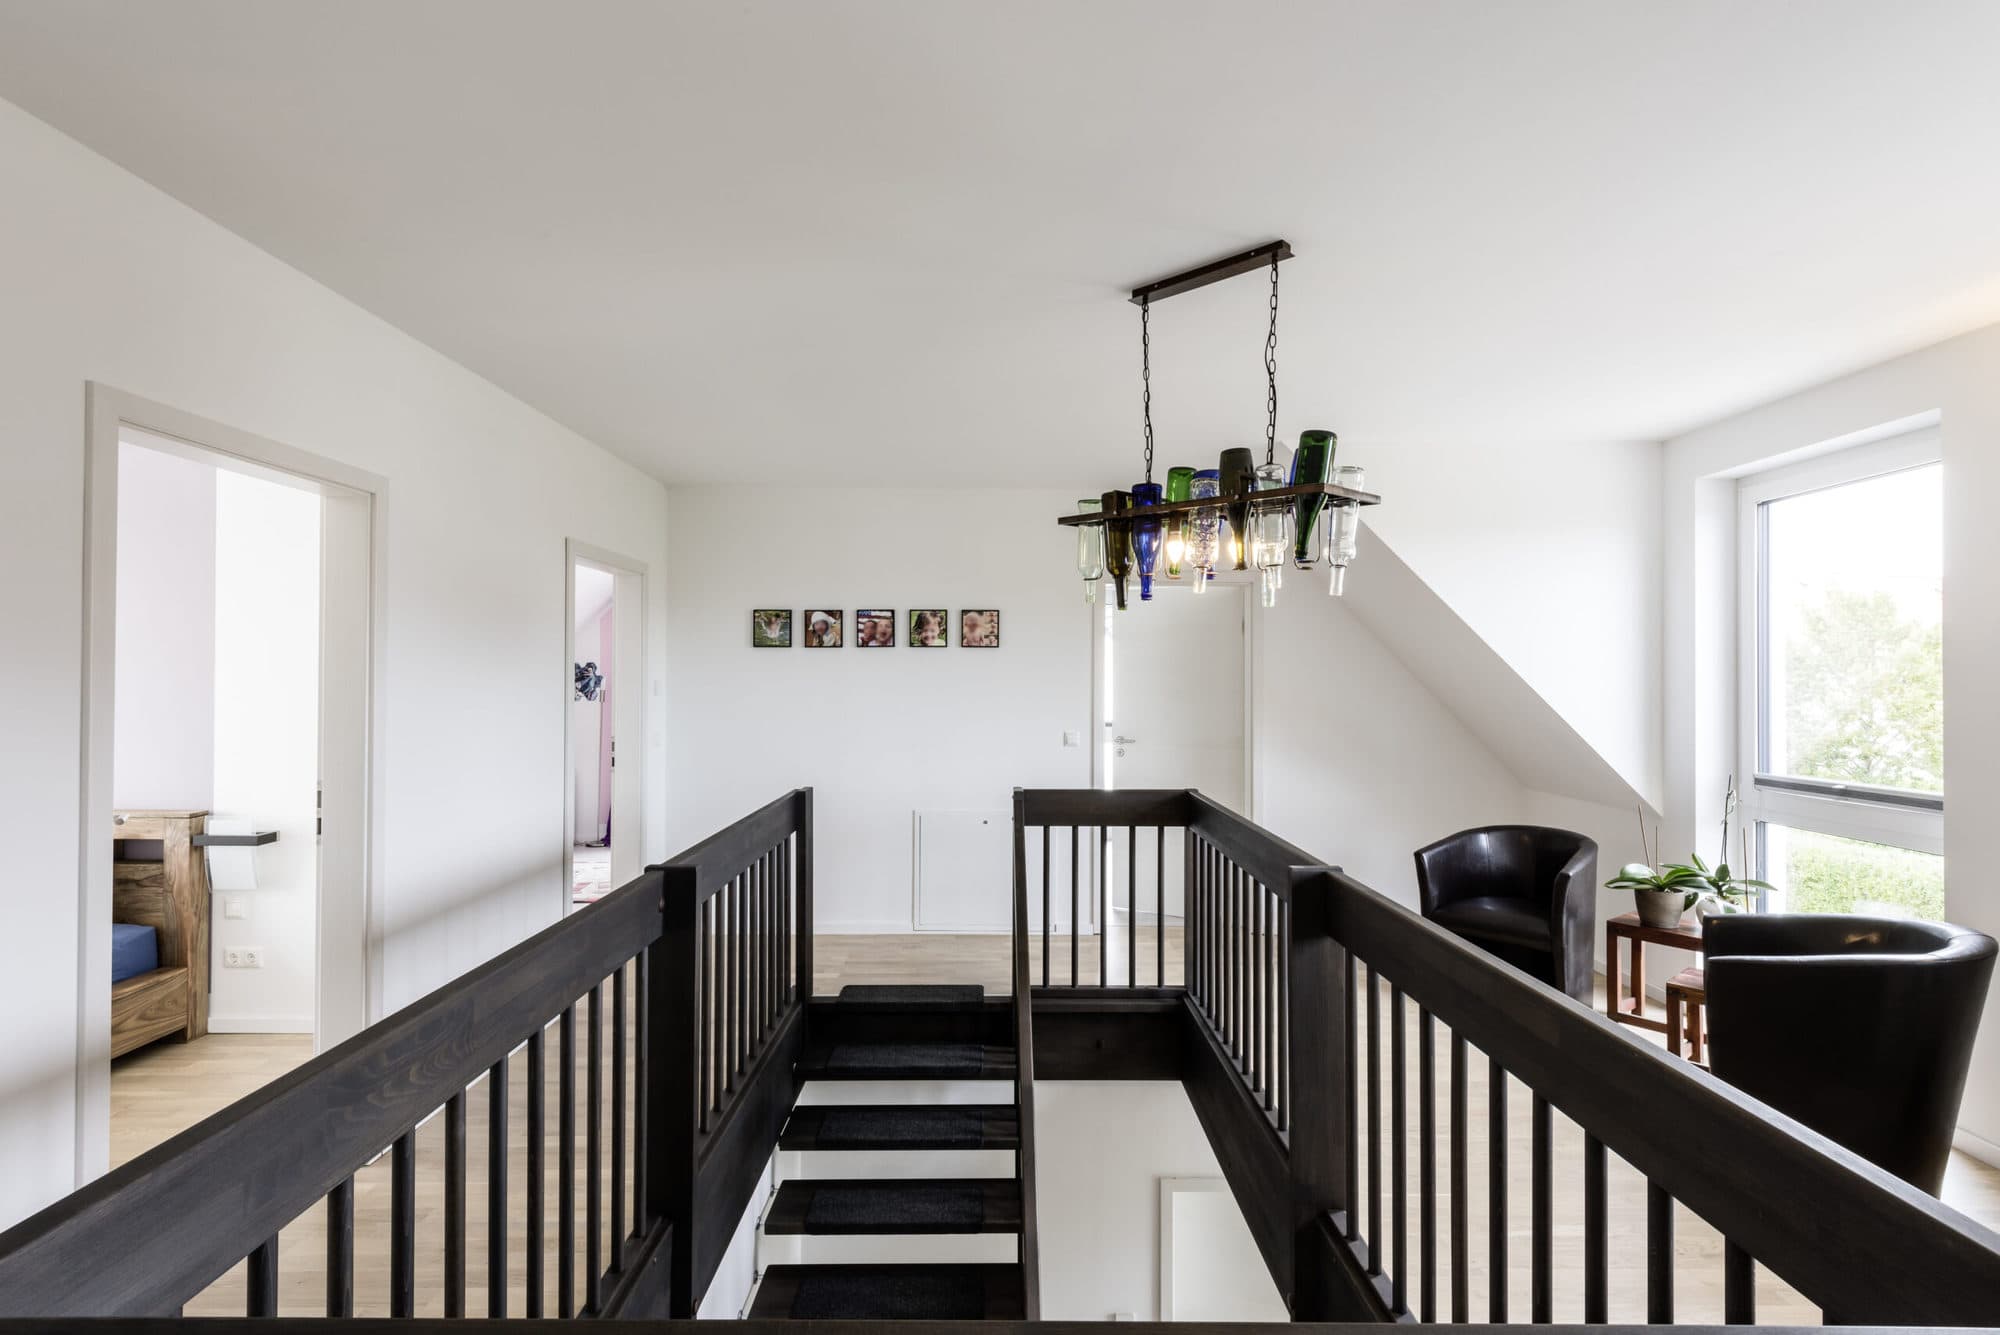 einfamilienhaus-treppe-holz-luftraum-treppenauge